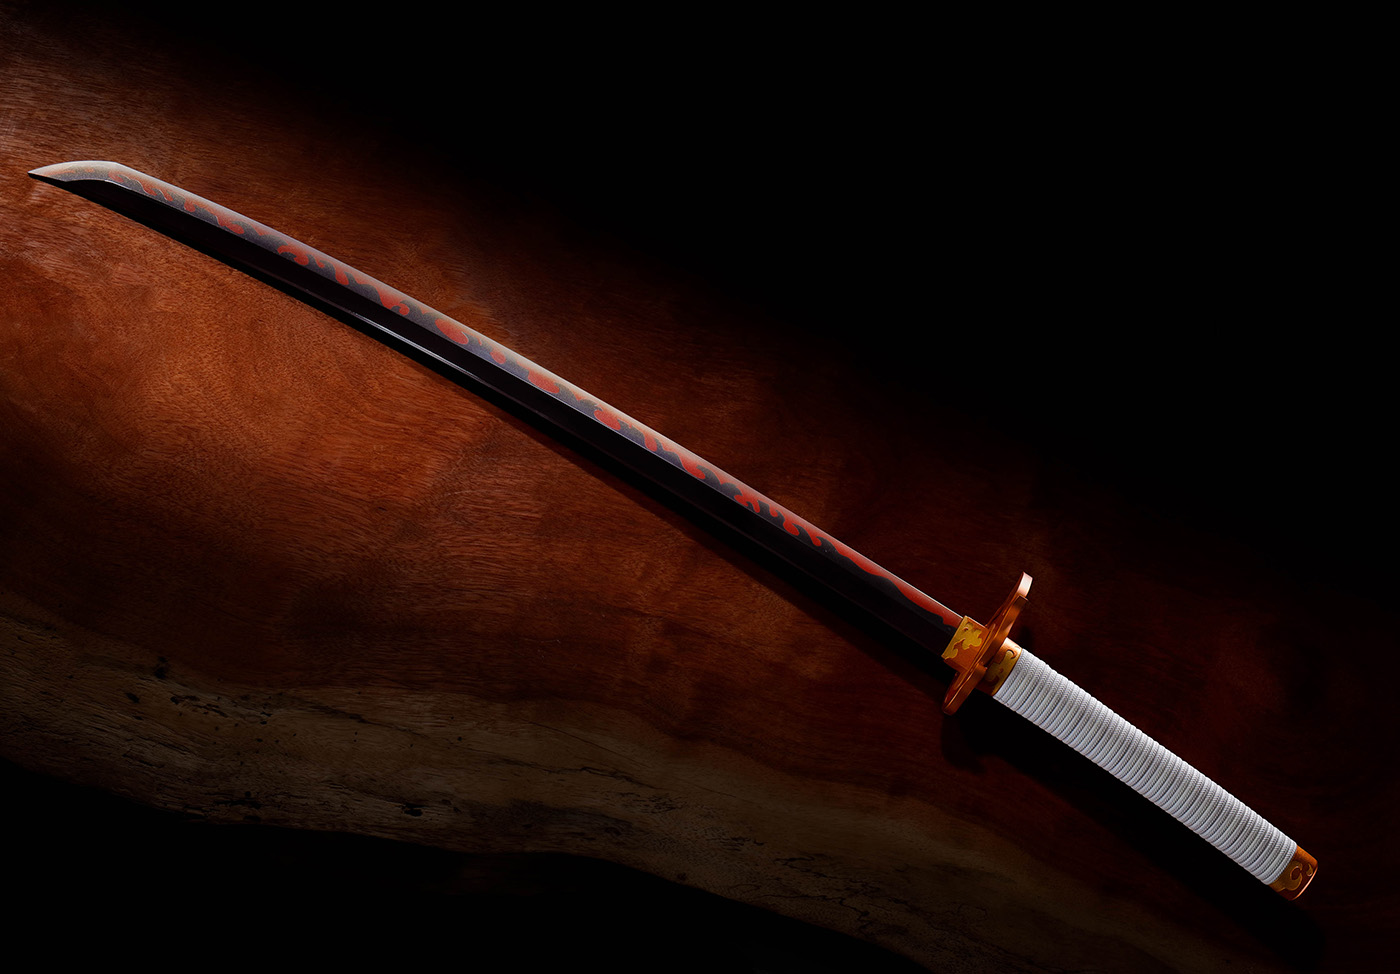 PROPLICA Kimetsu no Yaiba Rengoku Kyojuro's Nichirin Sword